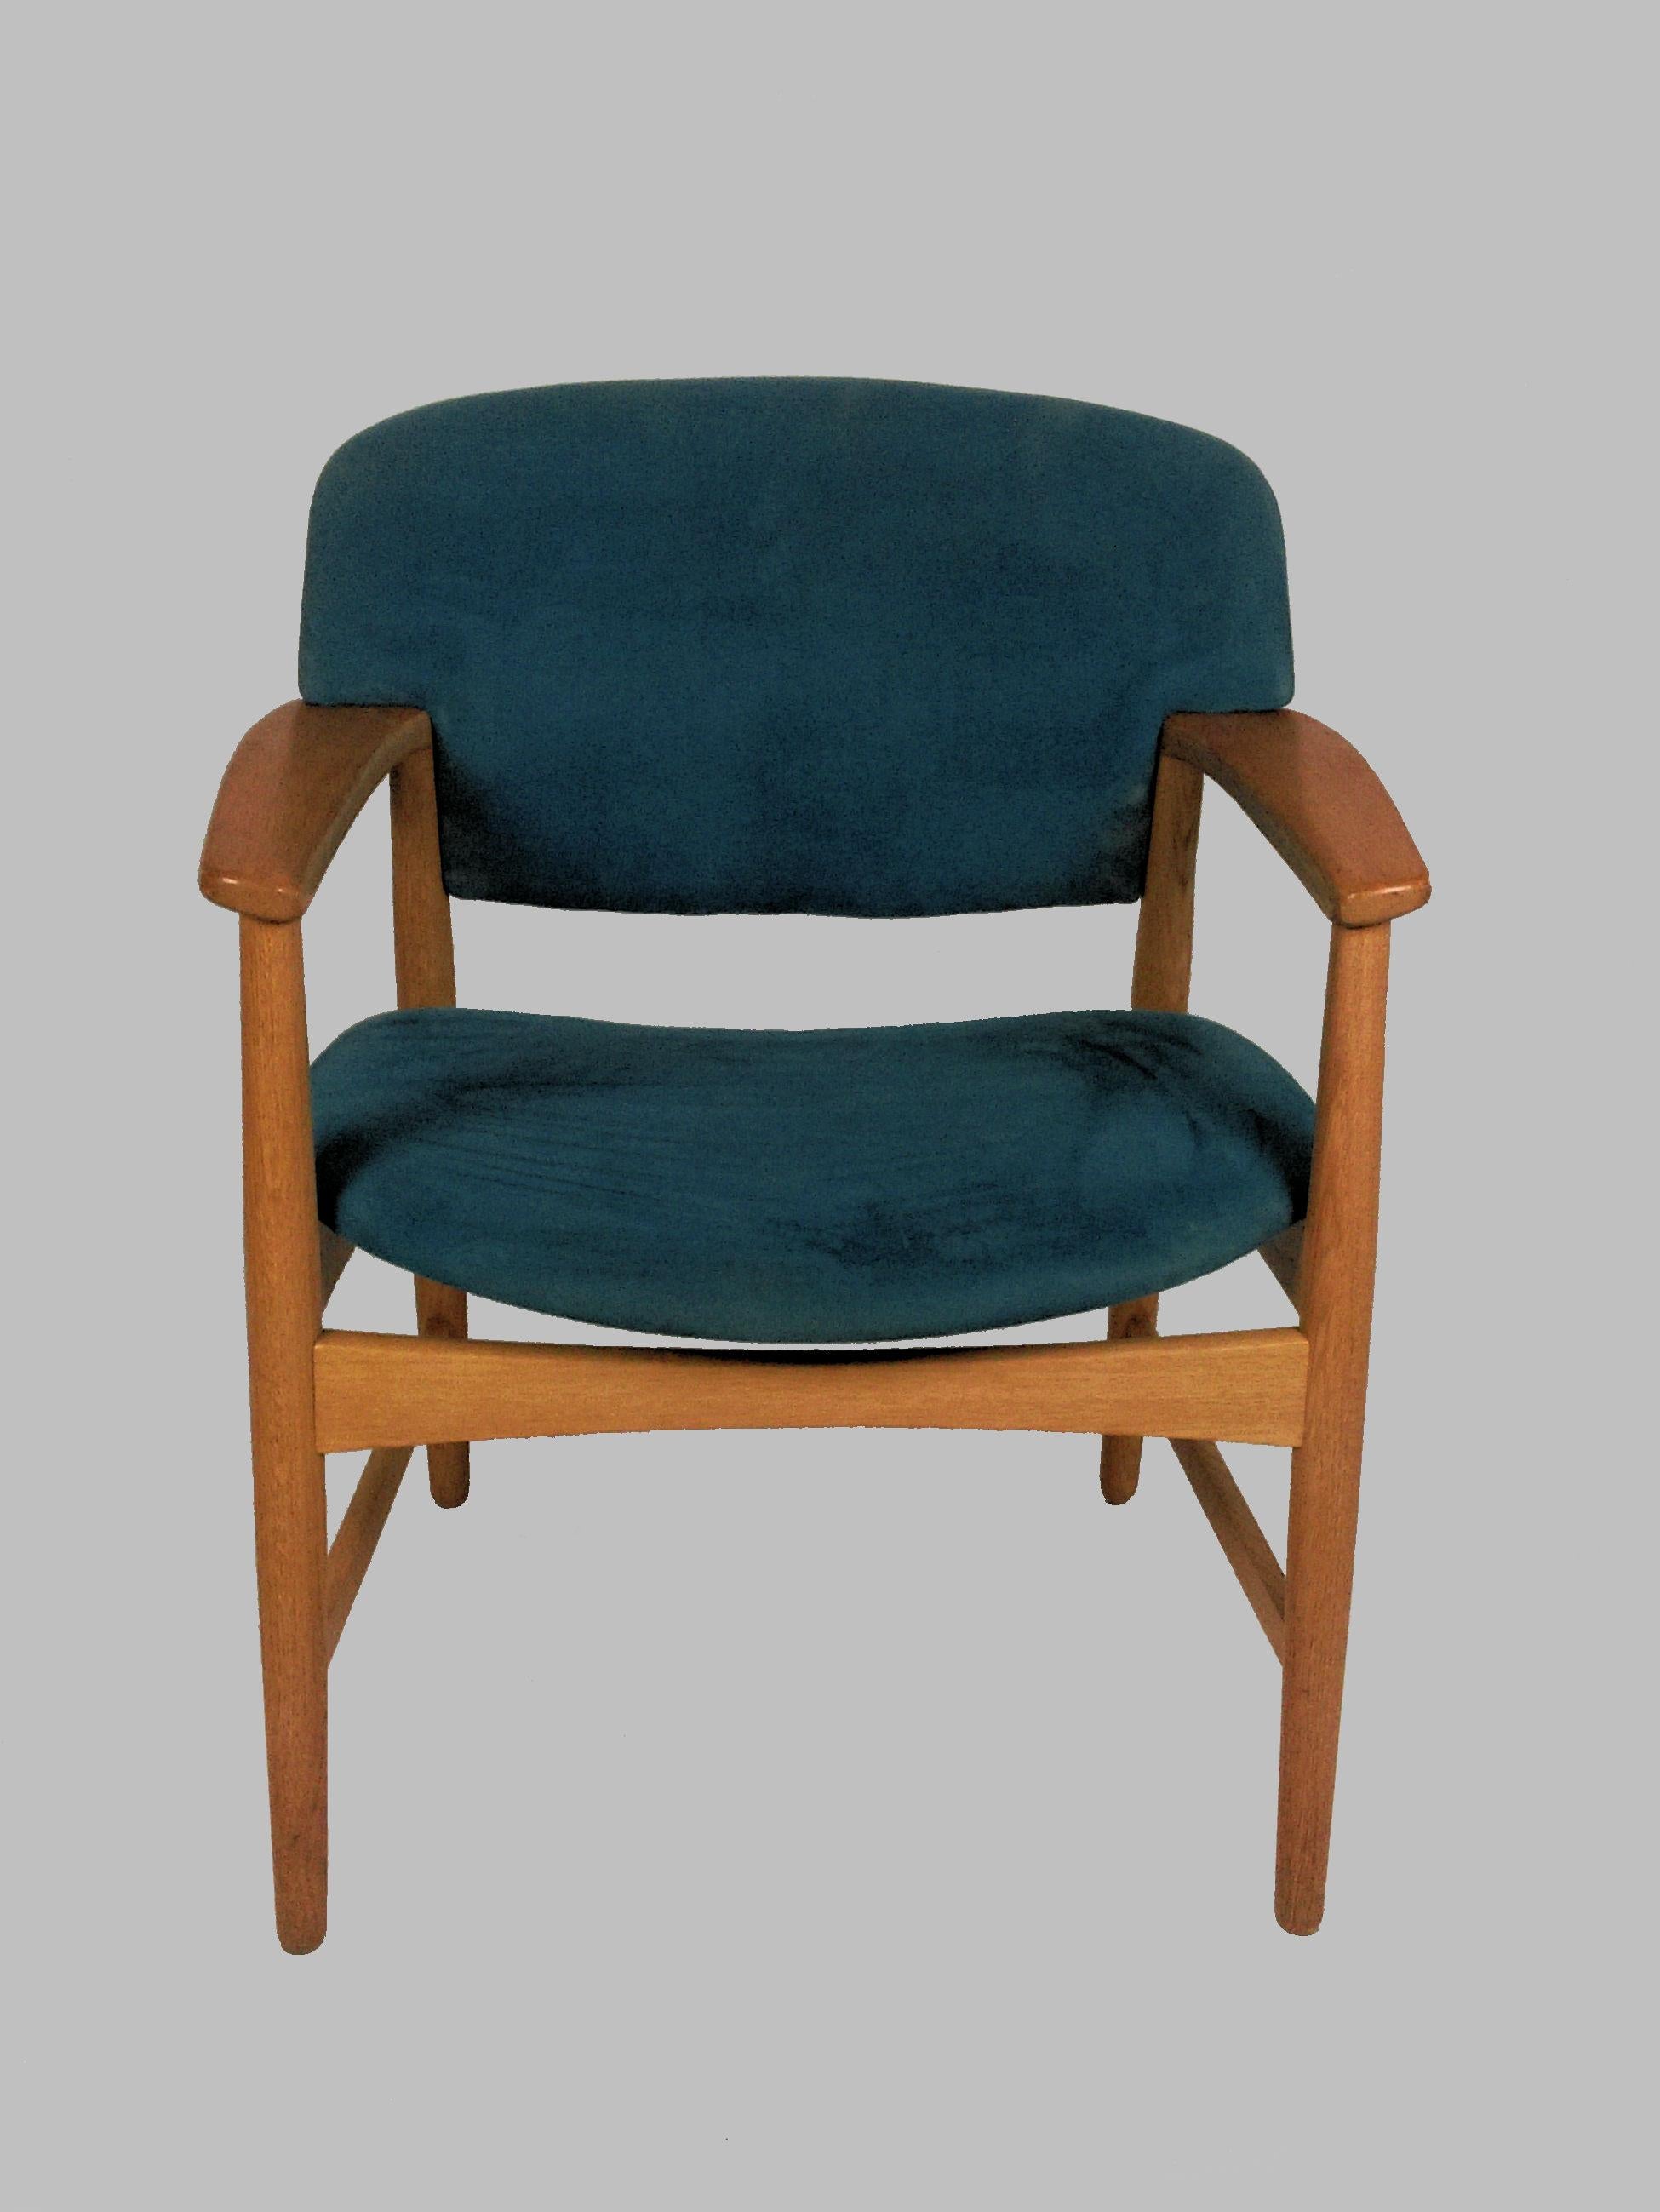 Satz von 8 Sesseln aus Eichenholz, entworfen von Ejner Larsen und Axel Bender Madsen im Jahr 1955 für Fritz Hansen.

Die bequemen, gut gestalteten und fast zeitlosen Stühle wurden von unserem Schreiner übersehen und aufgearbeitet, um